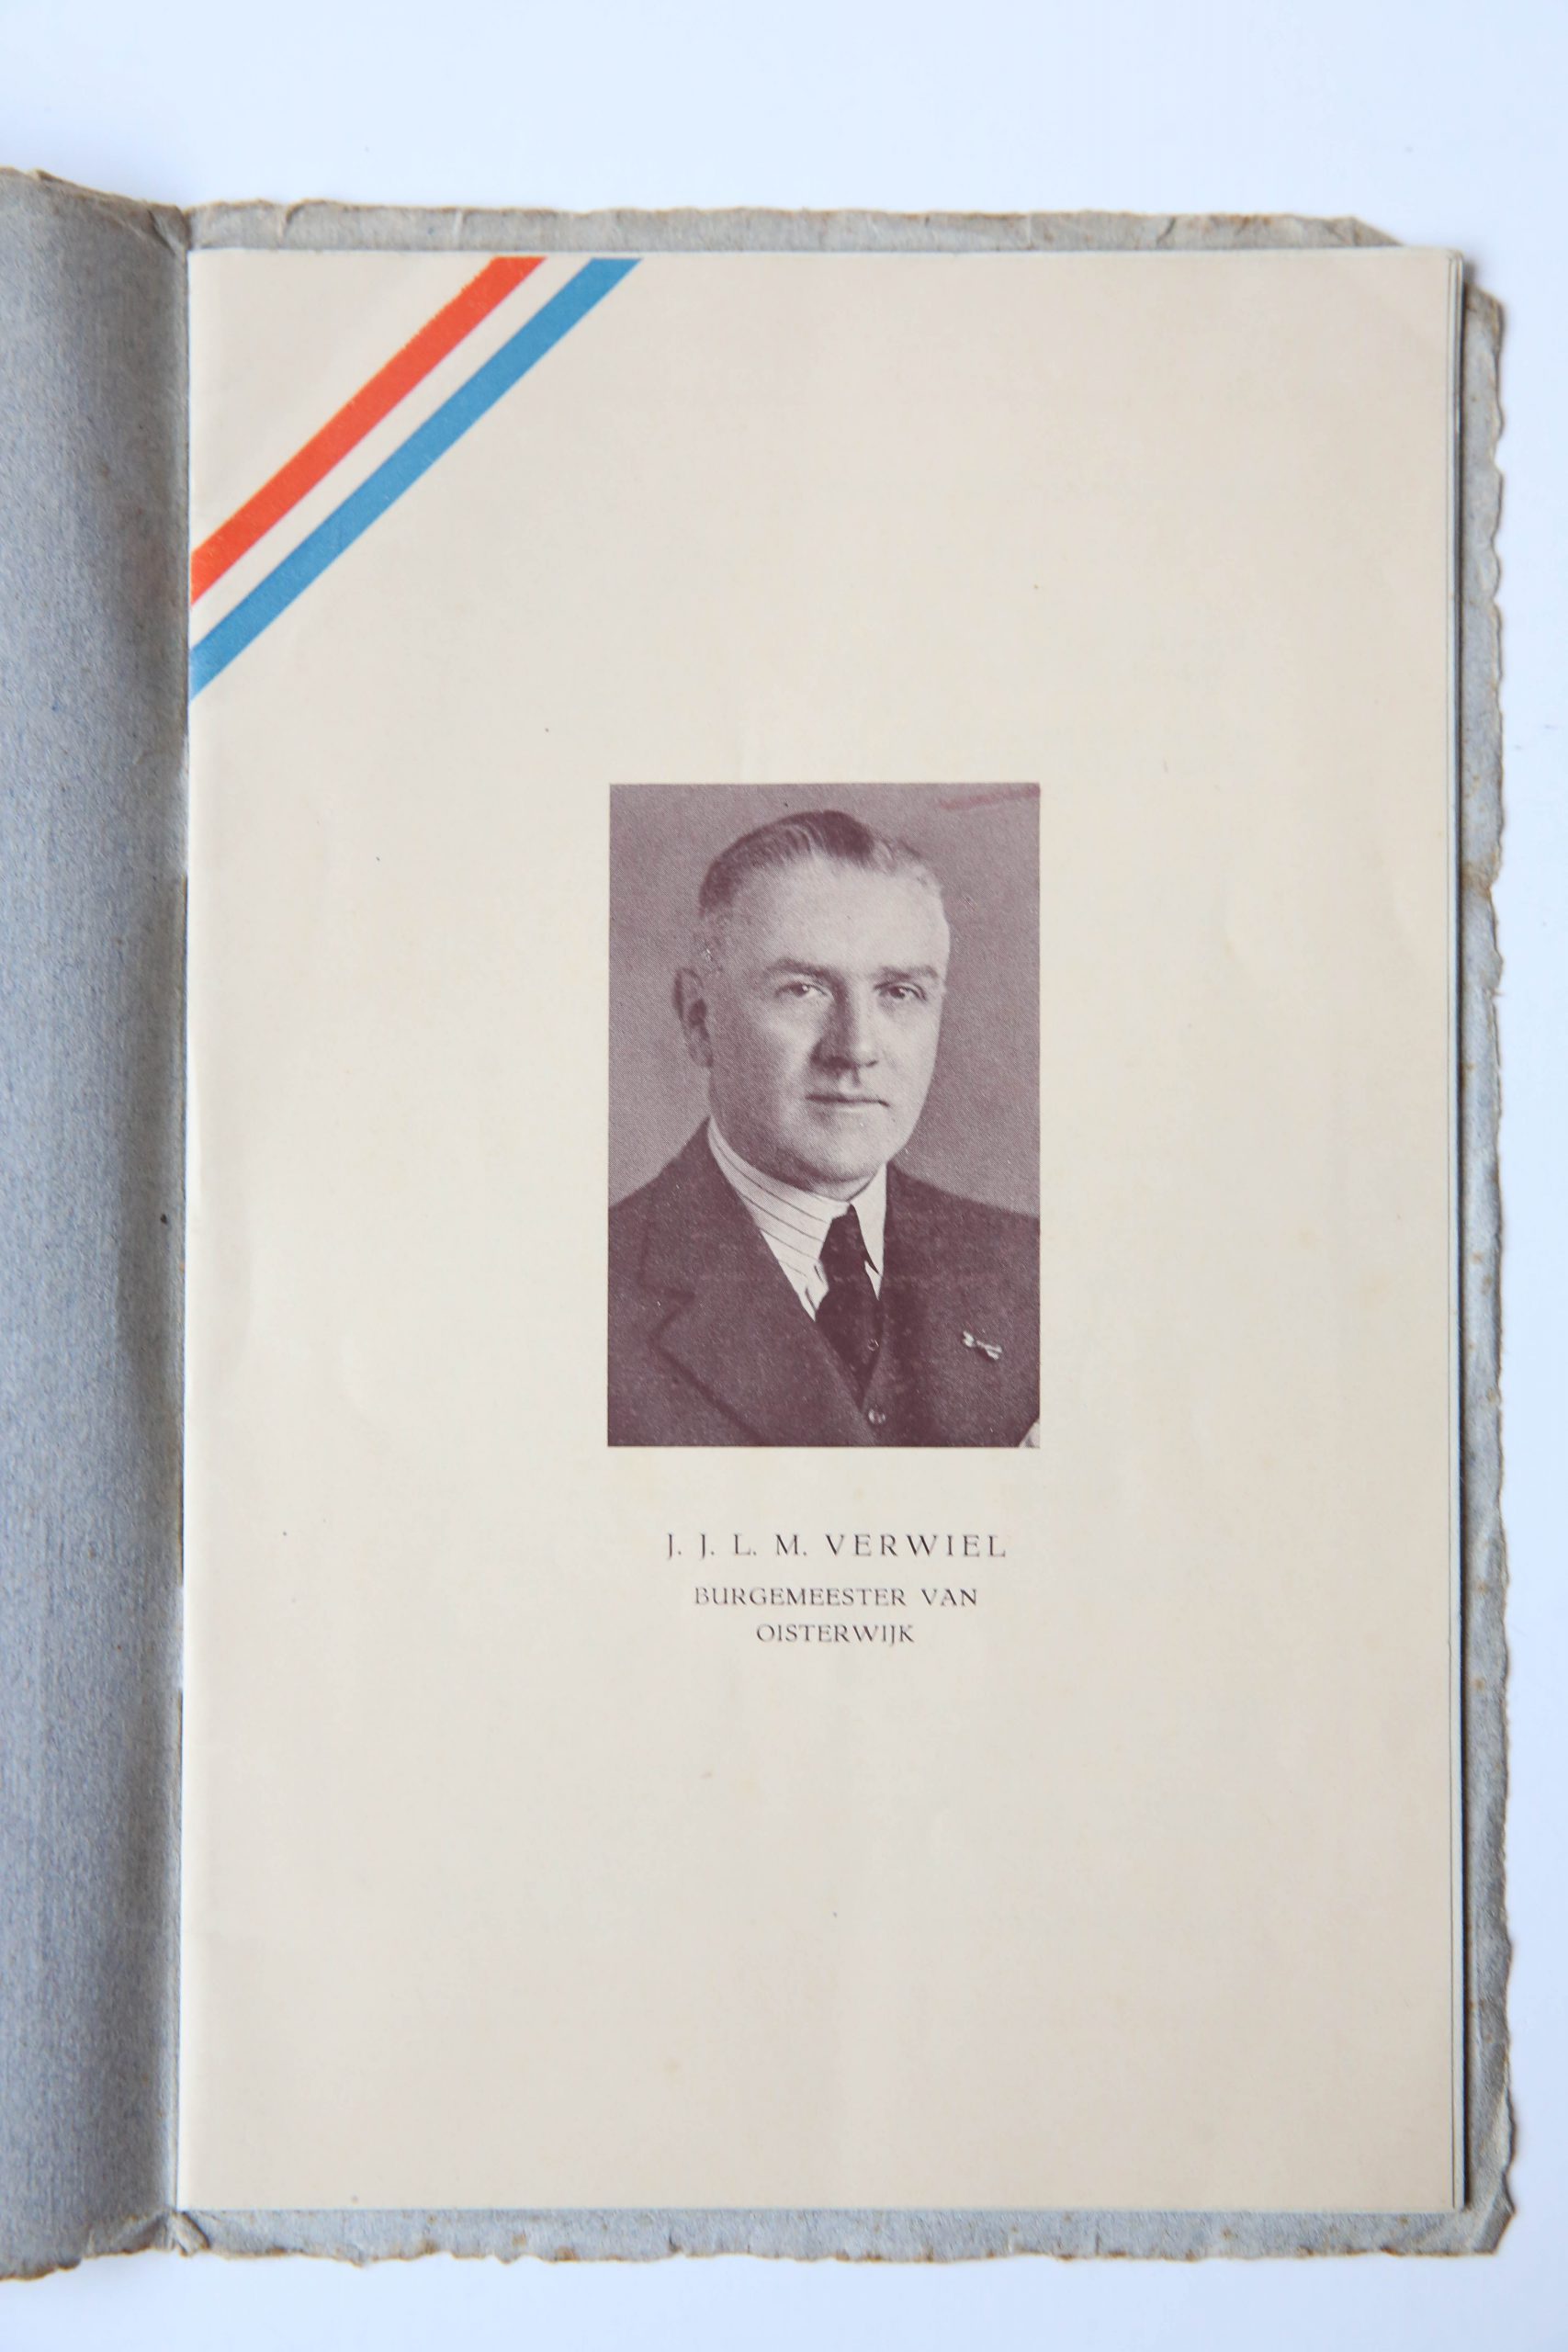 OISTERWIJK, VERWIEL -- Feestgids bij gelegenheid van het zilveren ambtsfeest van [...] J.J.L.M. Verwiel als burgemeester van Oisterwijk z.pl. 1947, gedrukt boekje, 16p, met illustraties.